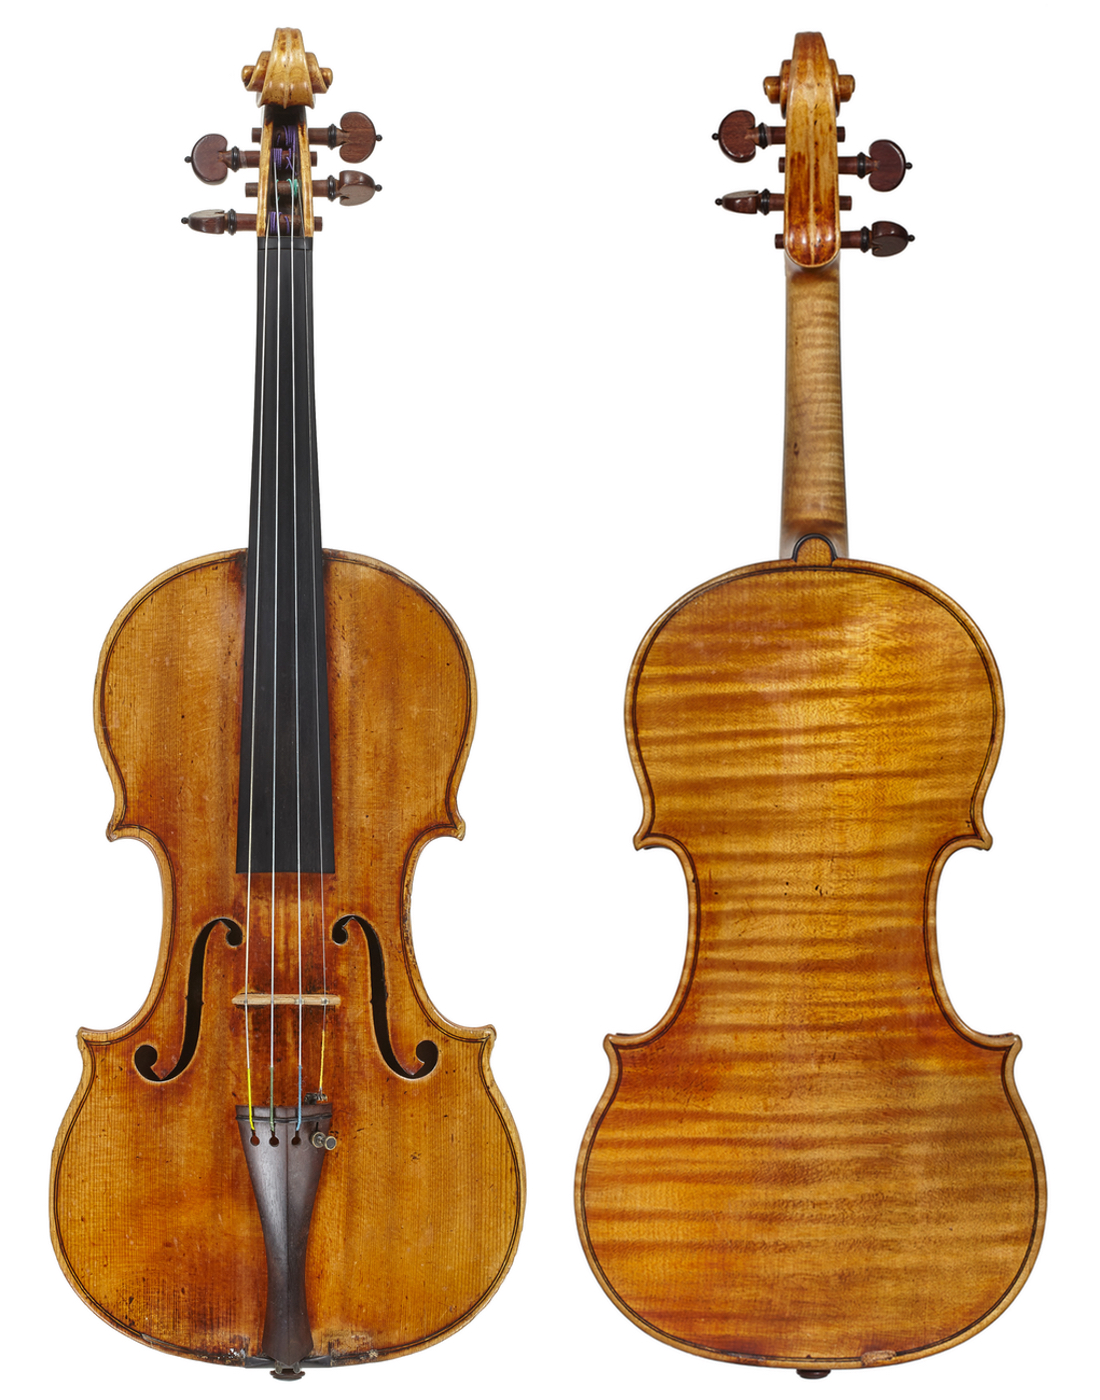 Sancy Stradivari of 1713